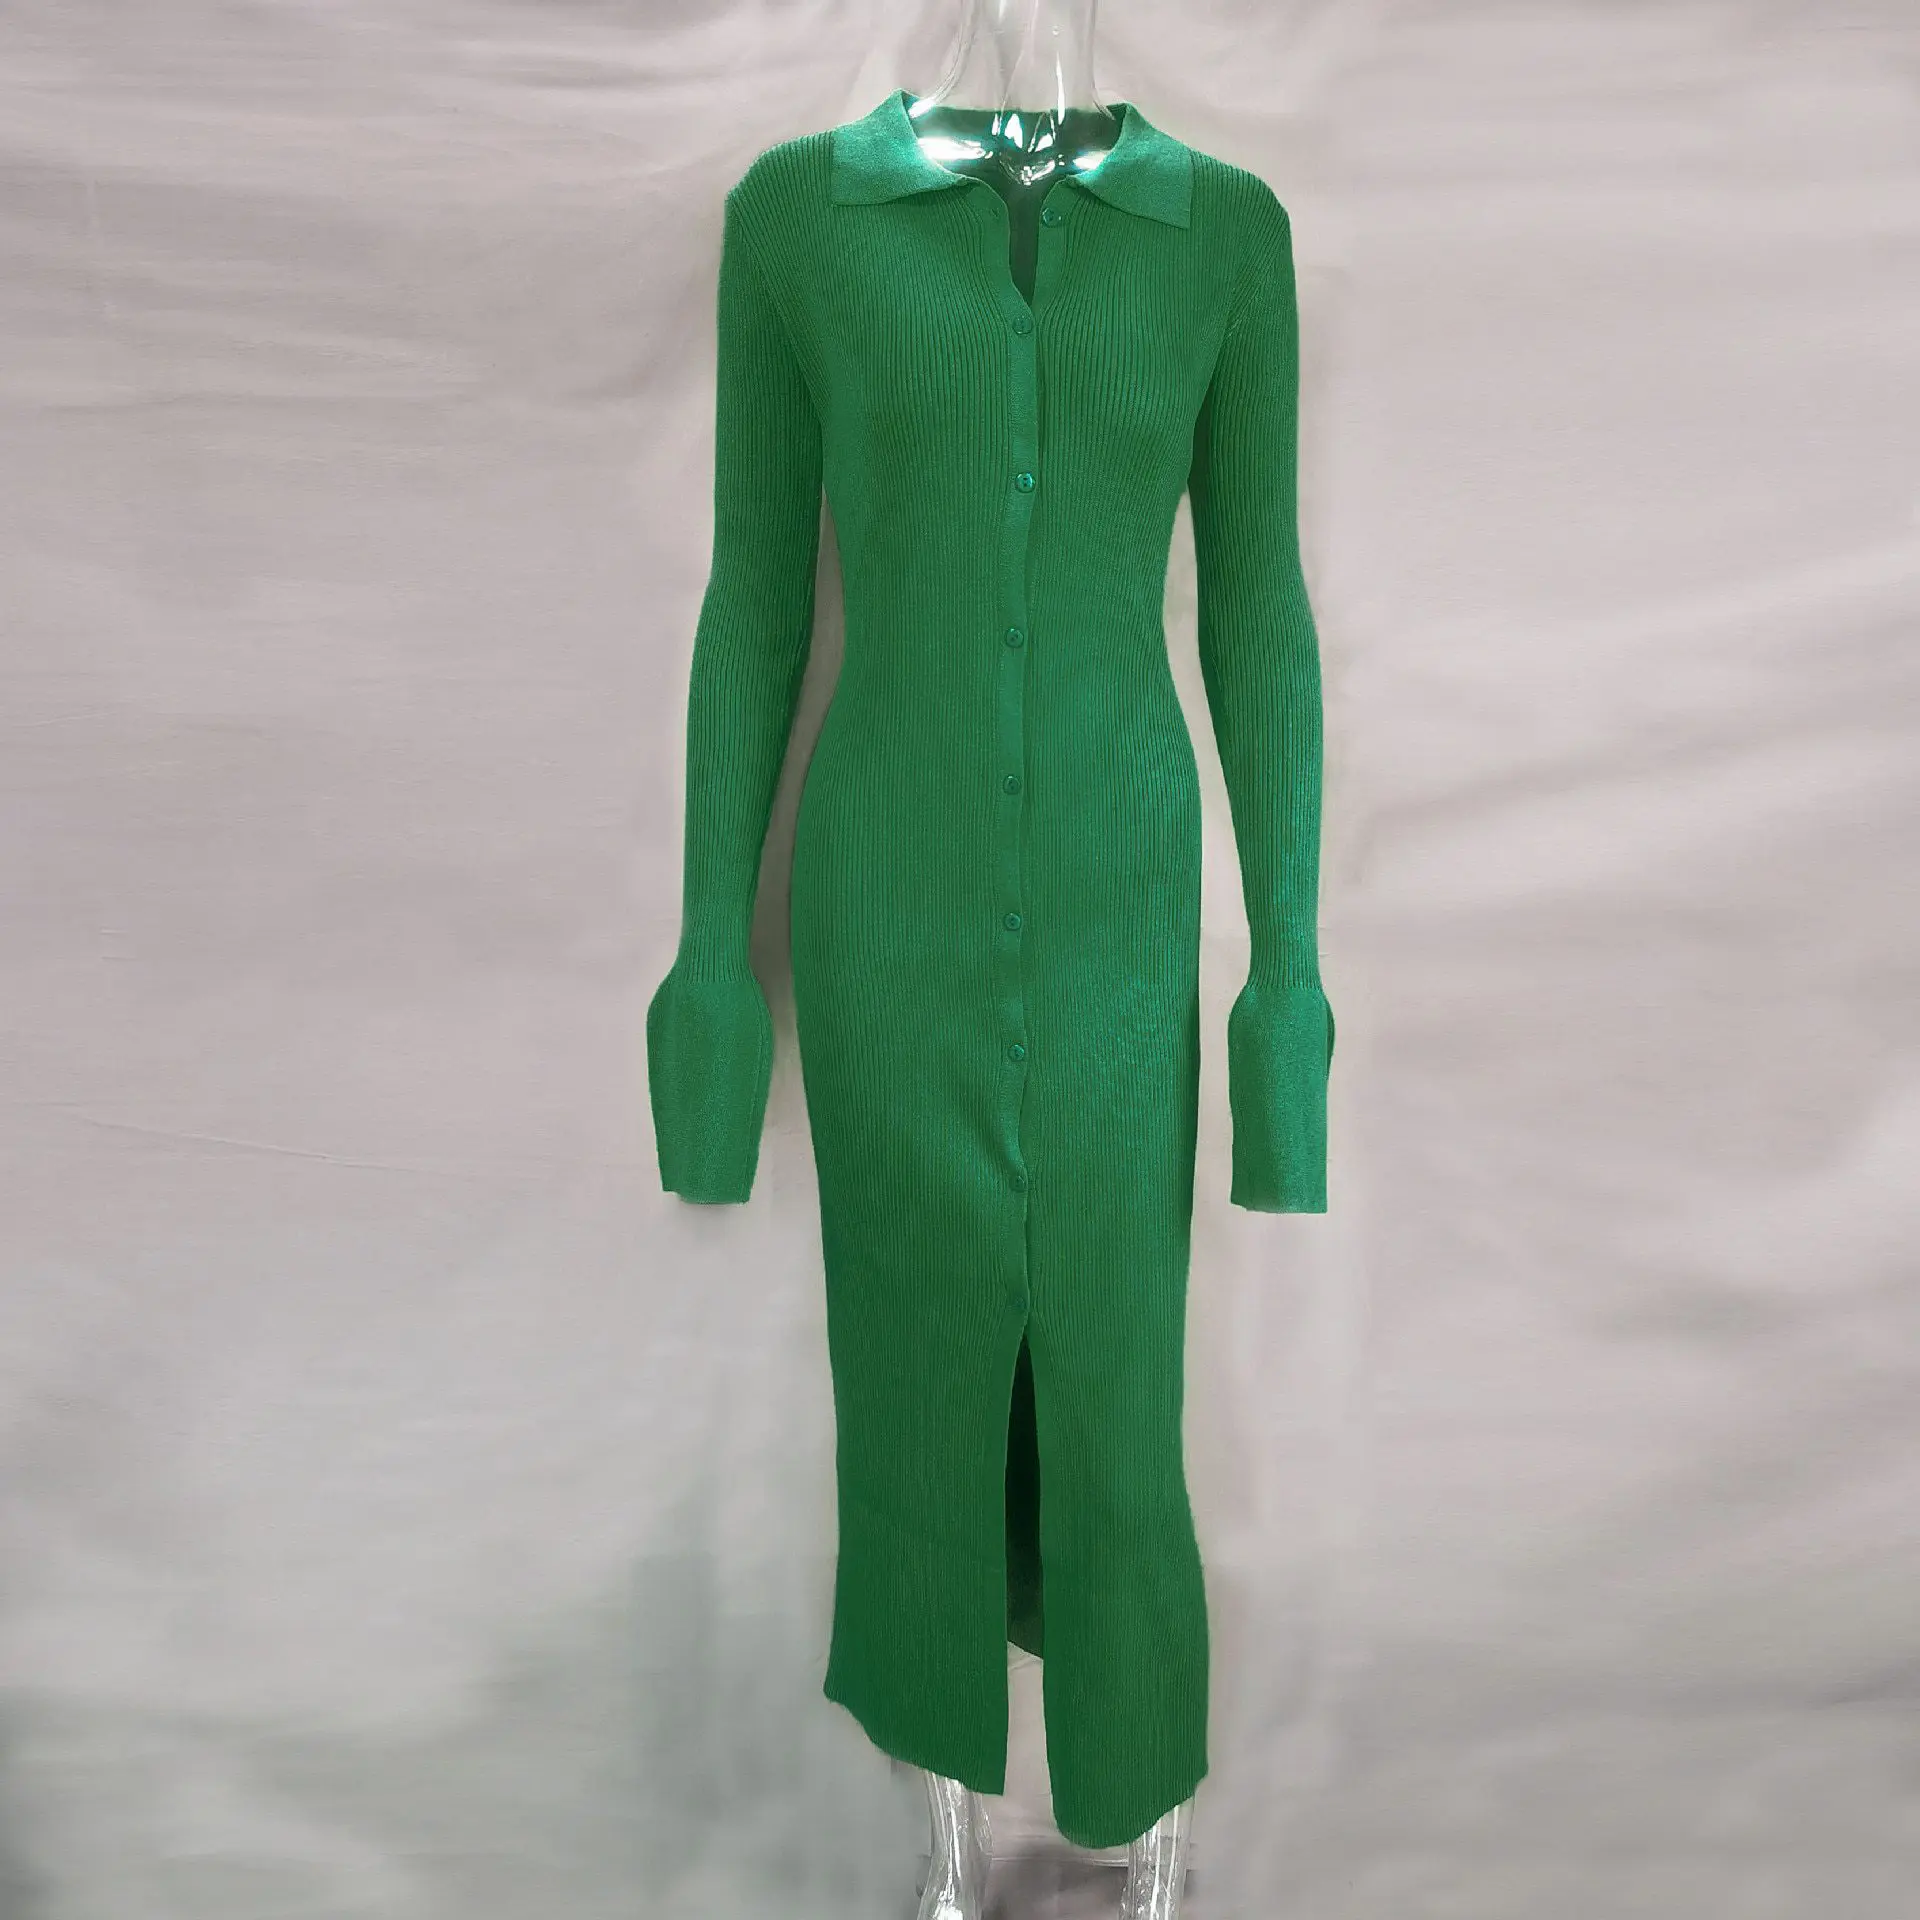 Knit Long Sleeve Single Breasted Mid Split Sweater Dress in Dresses